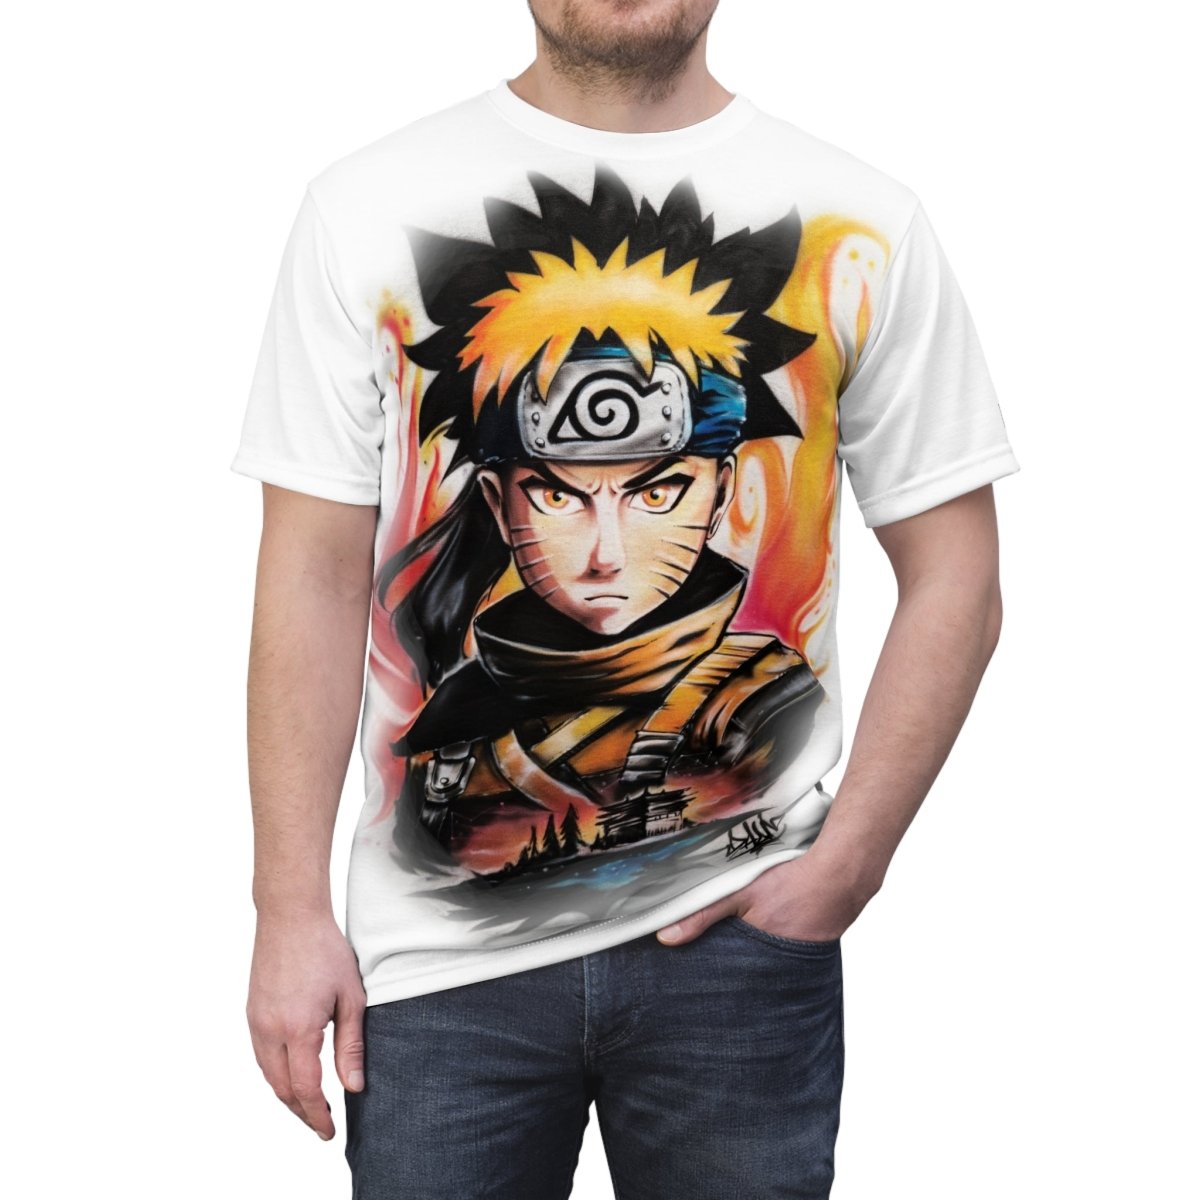 Naruto T Shirt Customizable Airbrush T shirt Design from Airbrush Customs x Dale The Airbrush Guy